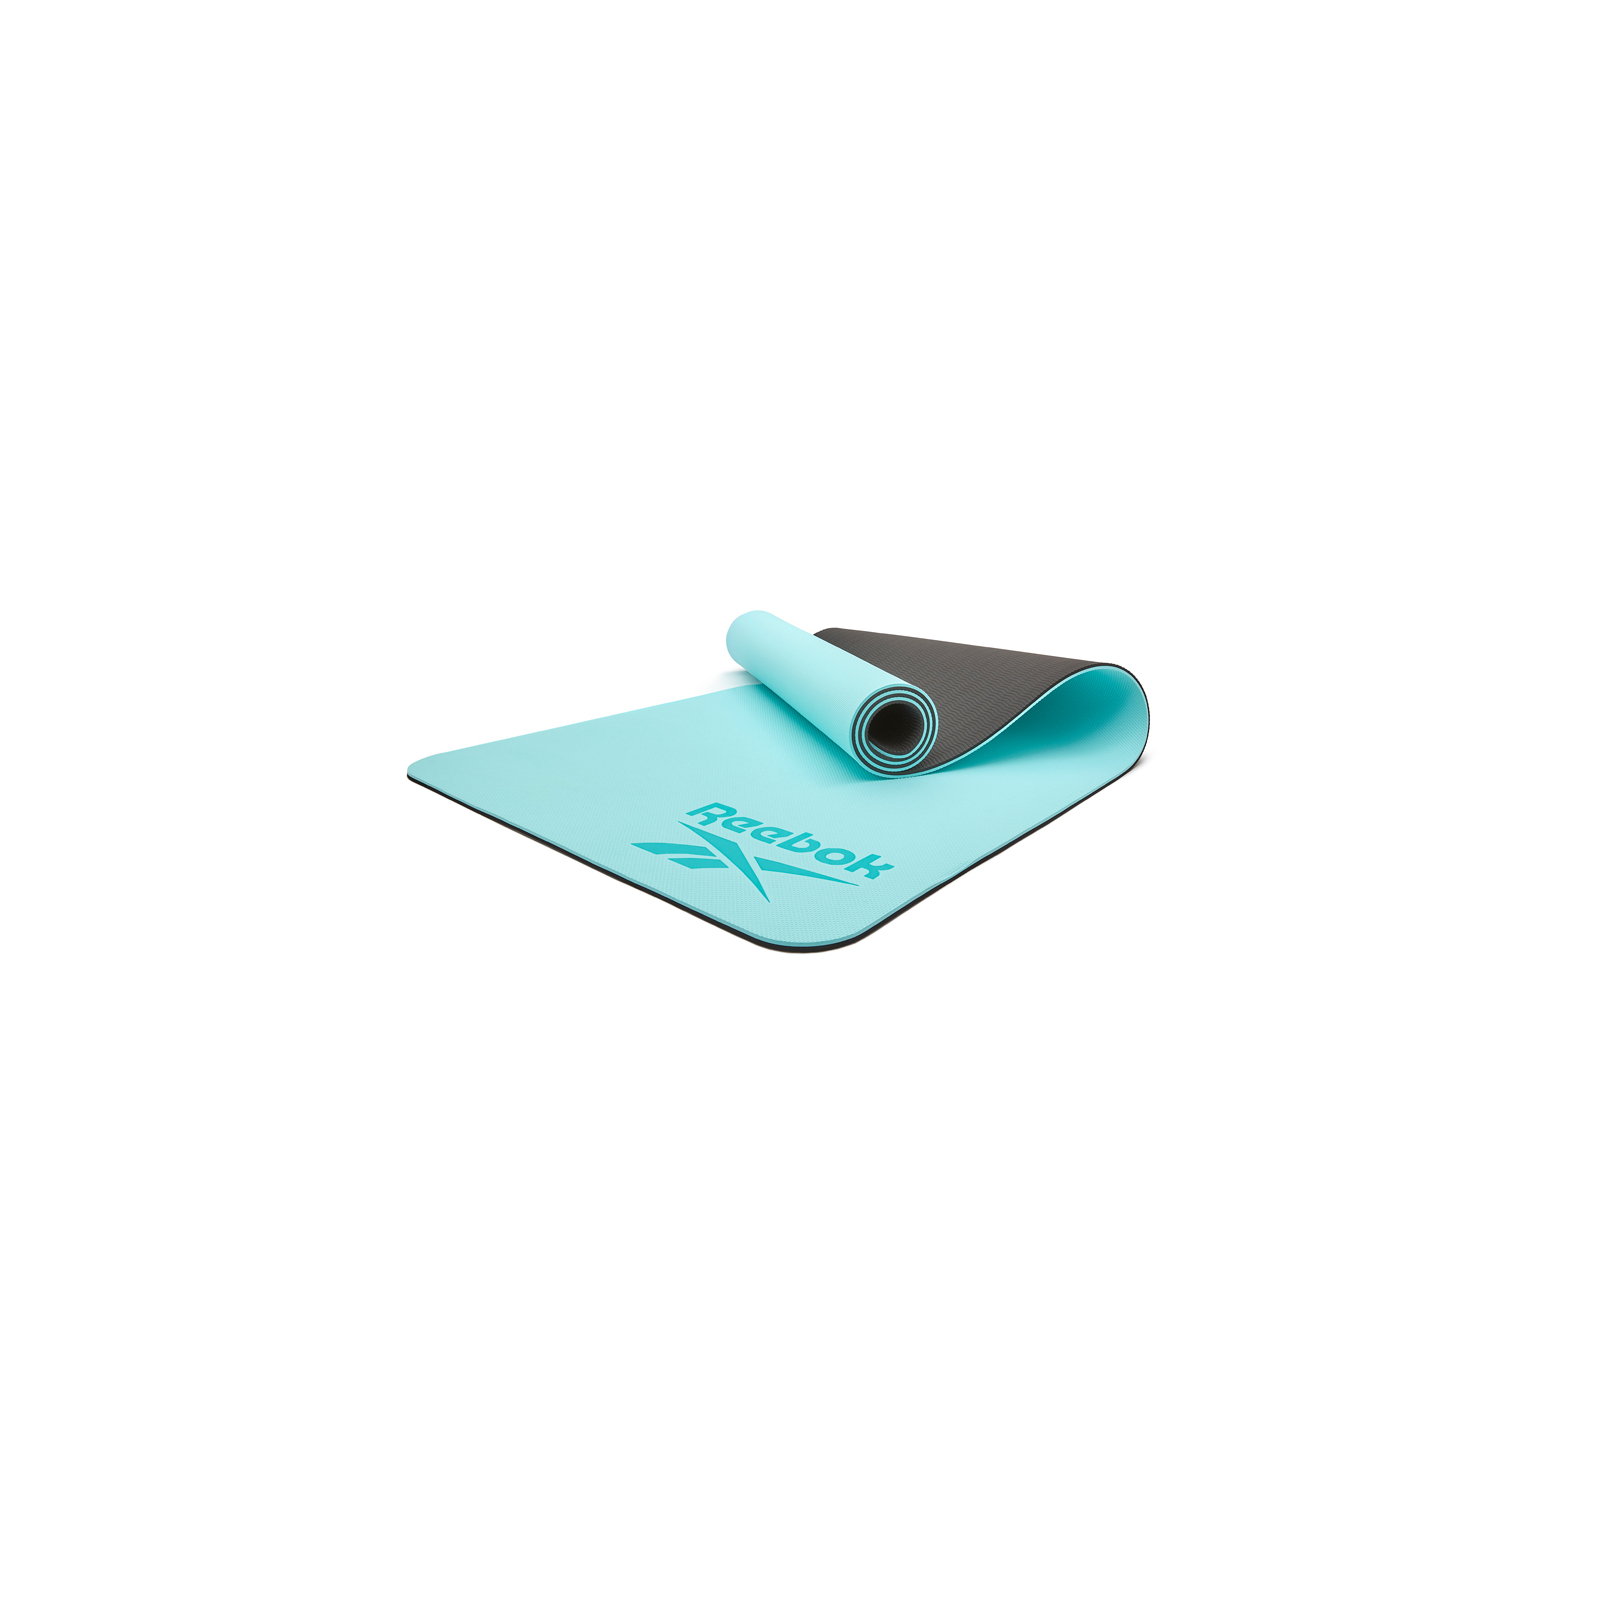 Килимок для йоги Reebok Double Sided Yoga Mat фіолетовий RAYG-11042PL (885652020848) зображення 6